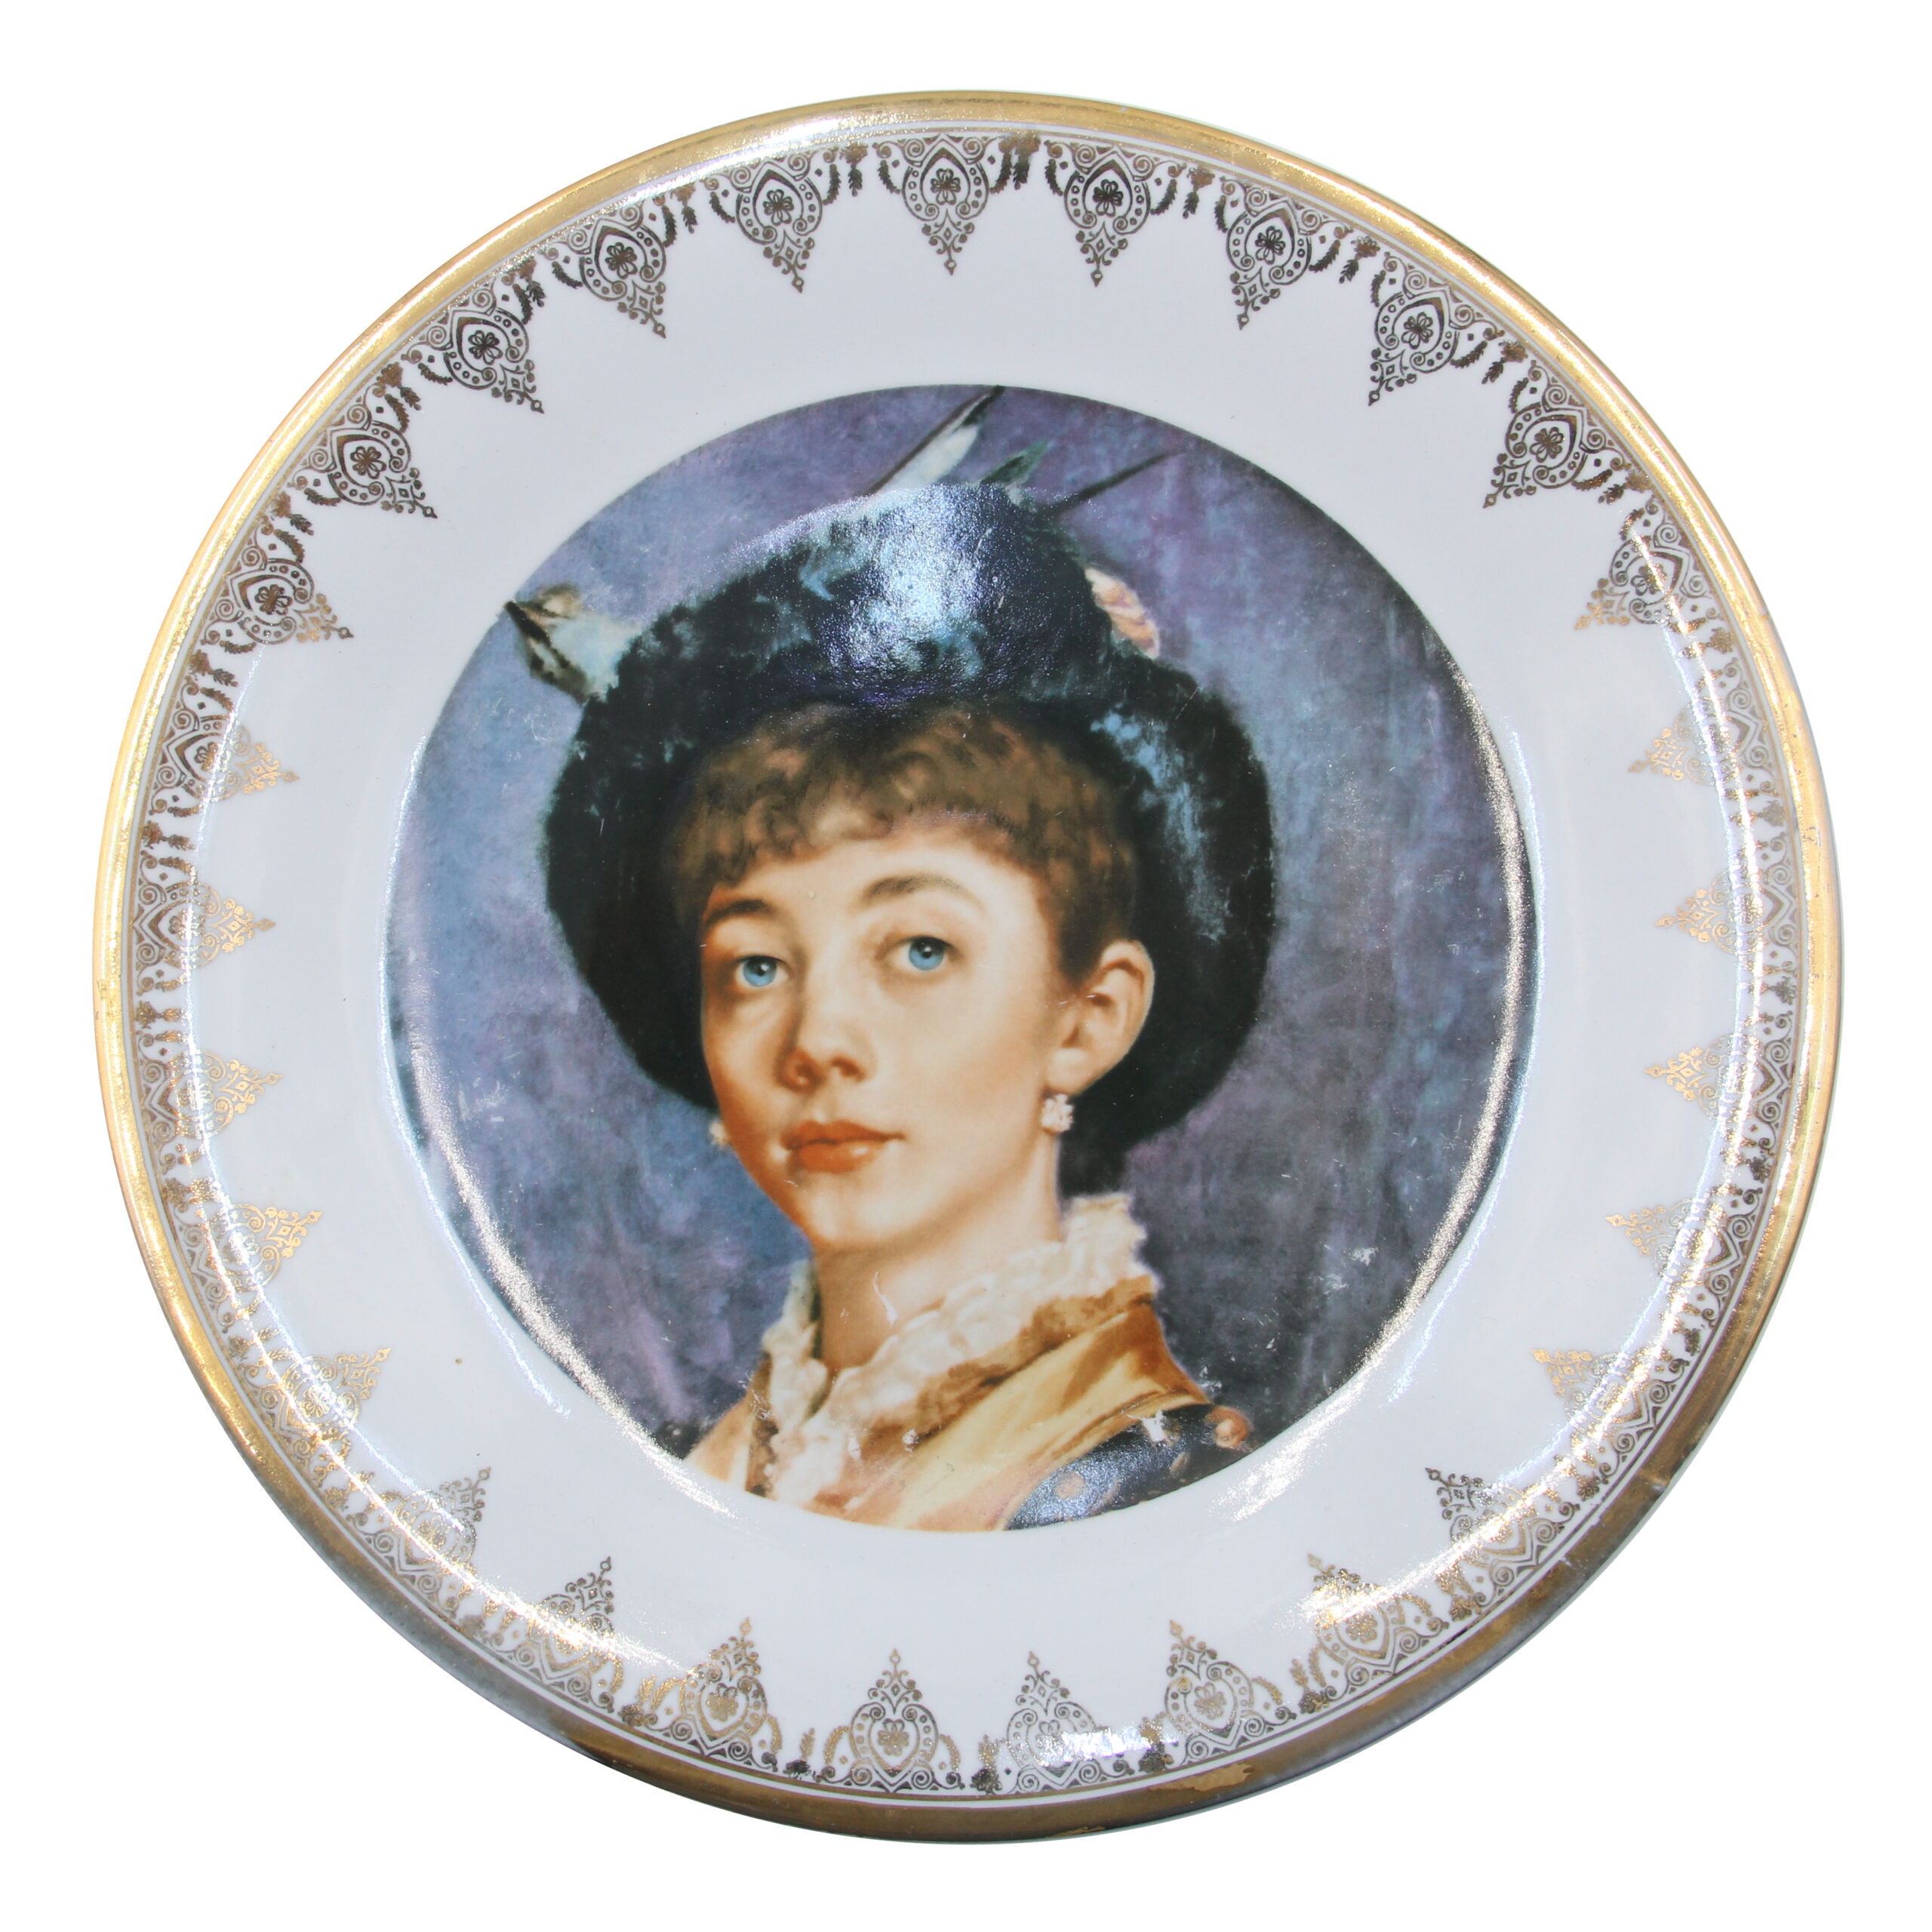 Patera kolekcjonerska Portret Młodej Kobiety porcelana WAWEL zdjęcie 1